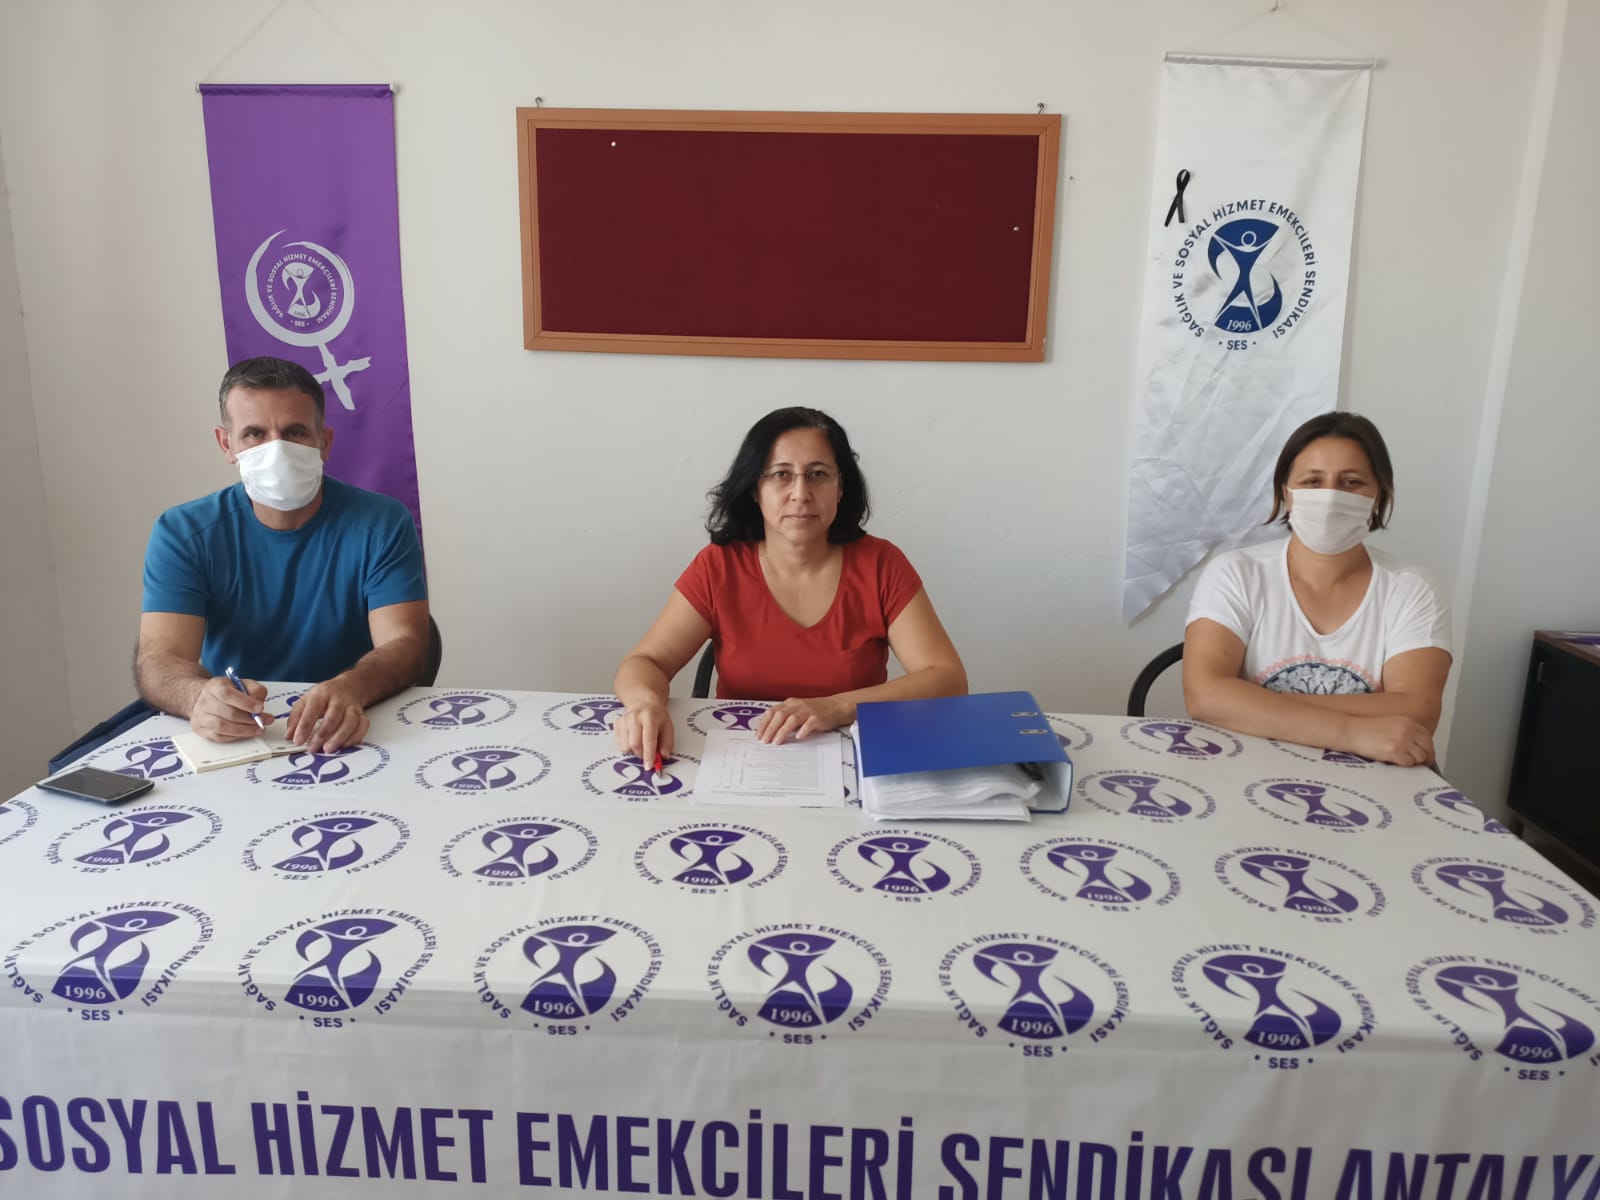 Antalya Şubemiz “Güvenceli İş, Güvenli Gelecek” İmzalarını TBMM’ye Sunulması İçin Genel Merkezimize Gönderdi